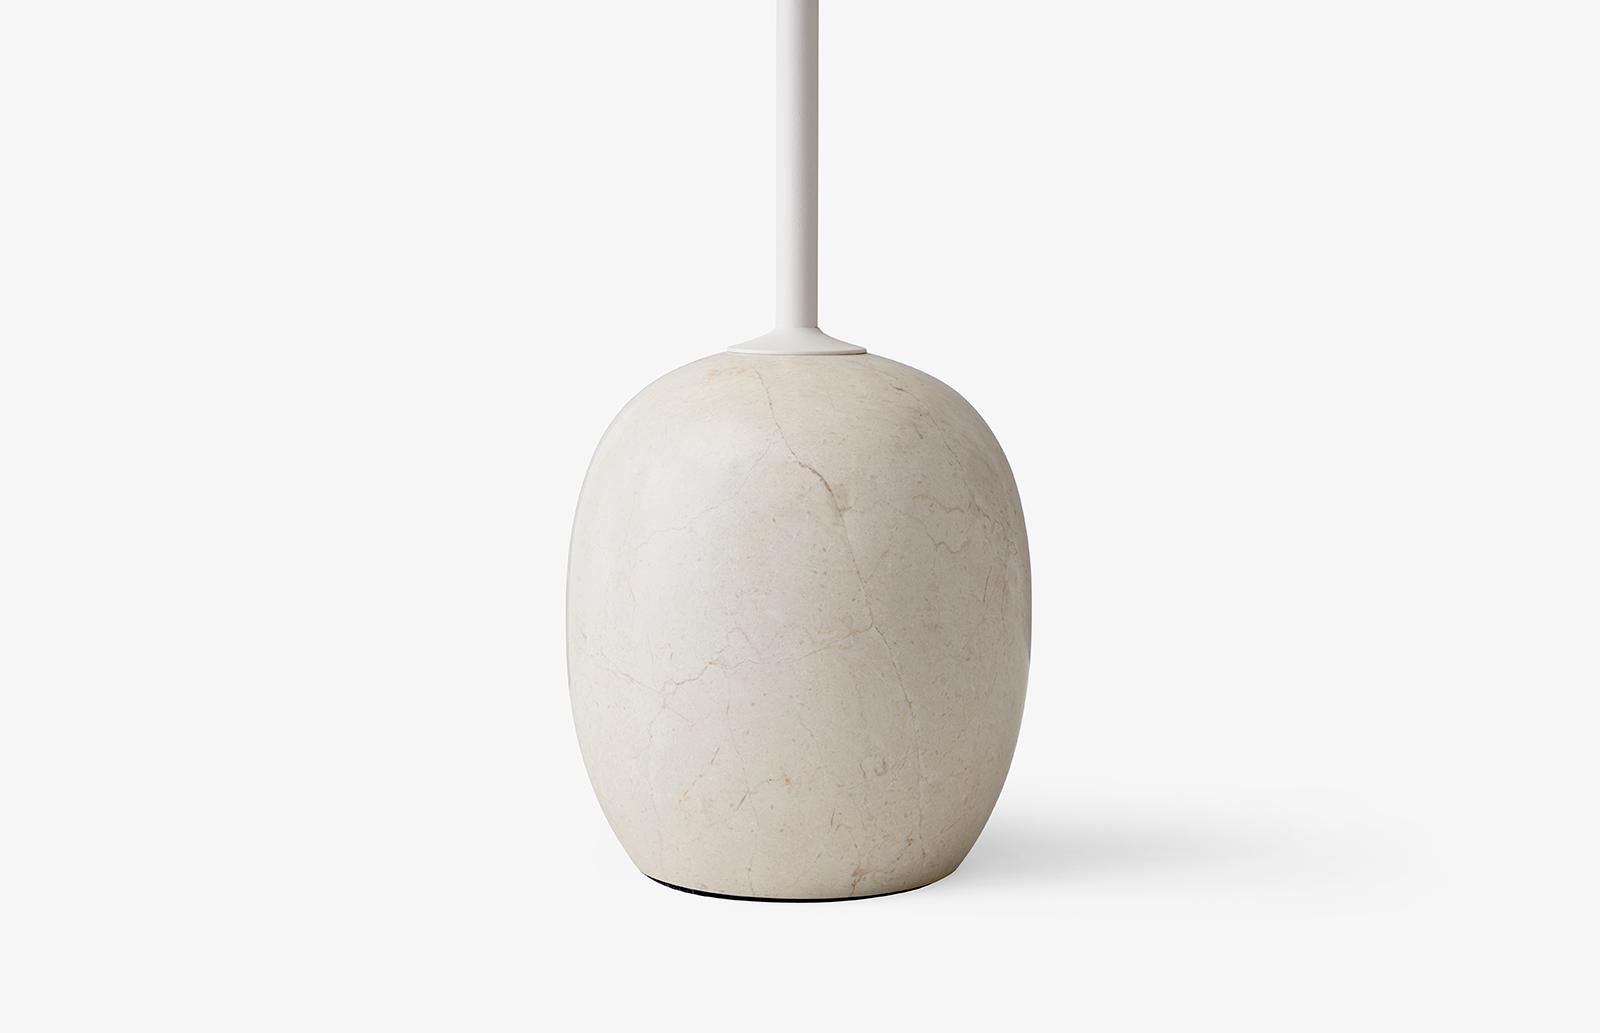 À première vue, Lato ressemble à une sculpture, avec son mince plateau rond équilibré par une base de forme ovale. 
Le marbre est mis en forme sur une mousse, puis aiguisé pour obtenir une finition semi-mate. 
La table est faite d'acier blanc et de